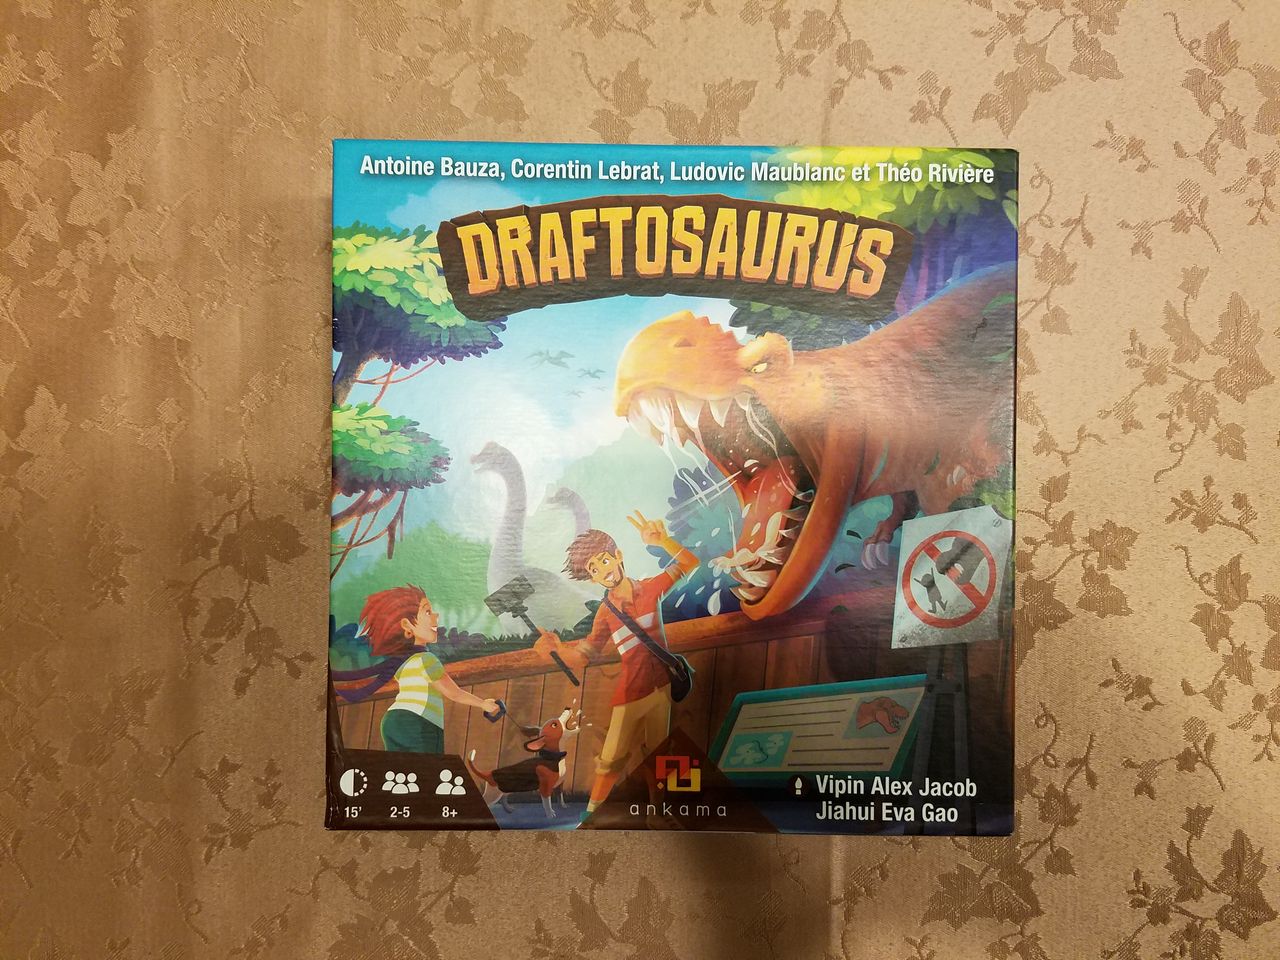 ボードゲーム レビュー 評価 ドラフトサウルス Draftosaurus あそびつながるラボ おすすめのボードゲーム紹介ブログ